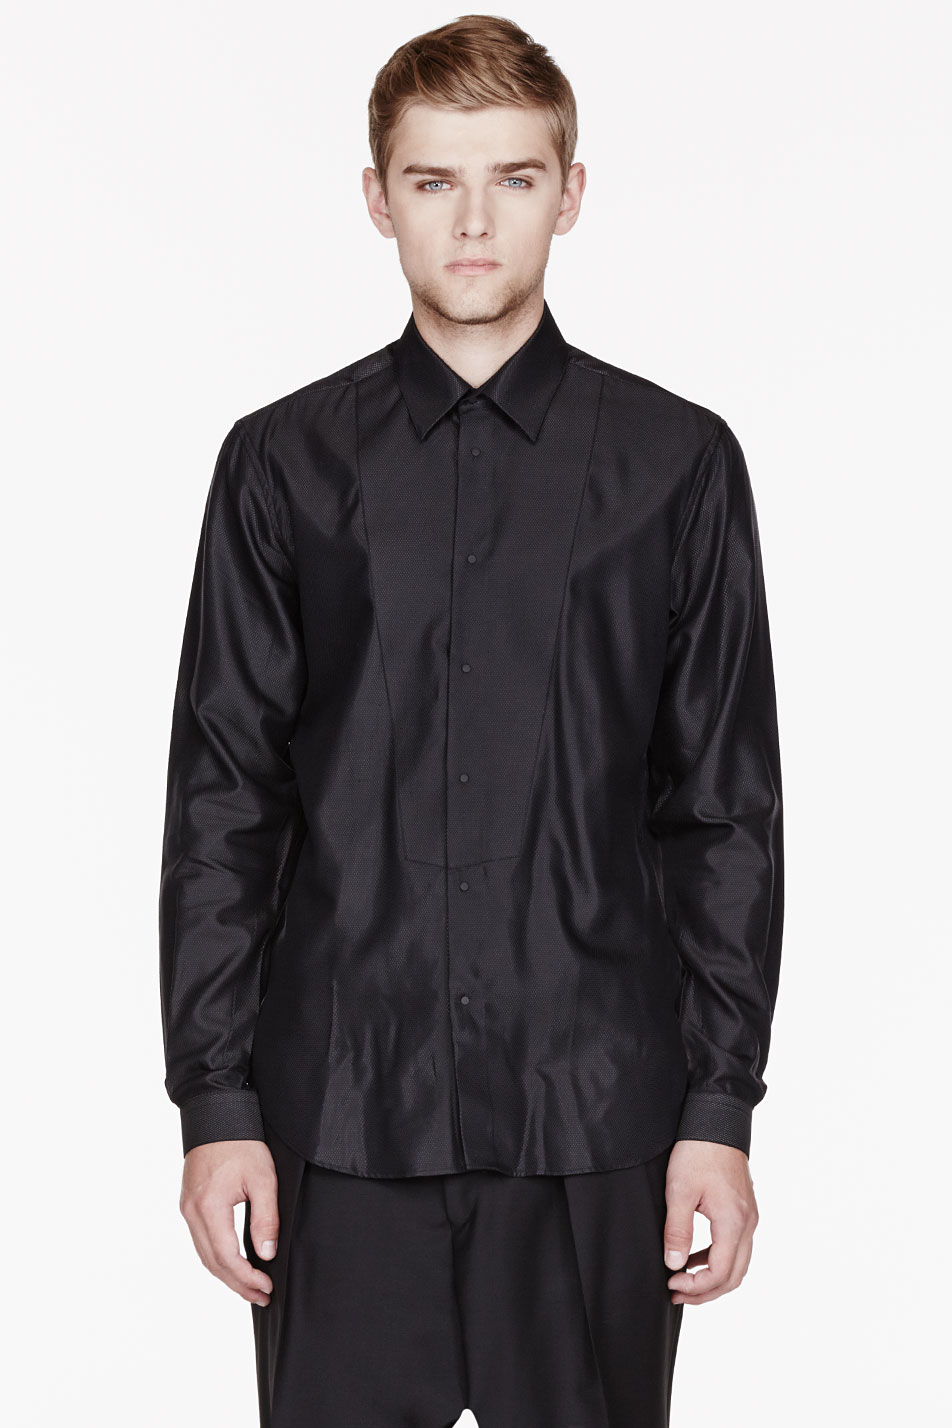 Lyst - Mugler Black Glossy Bib Shirt in Black for Men